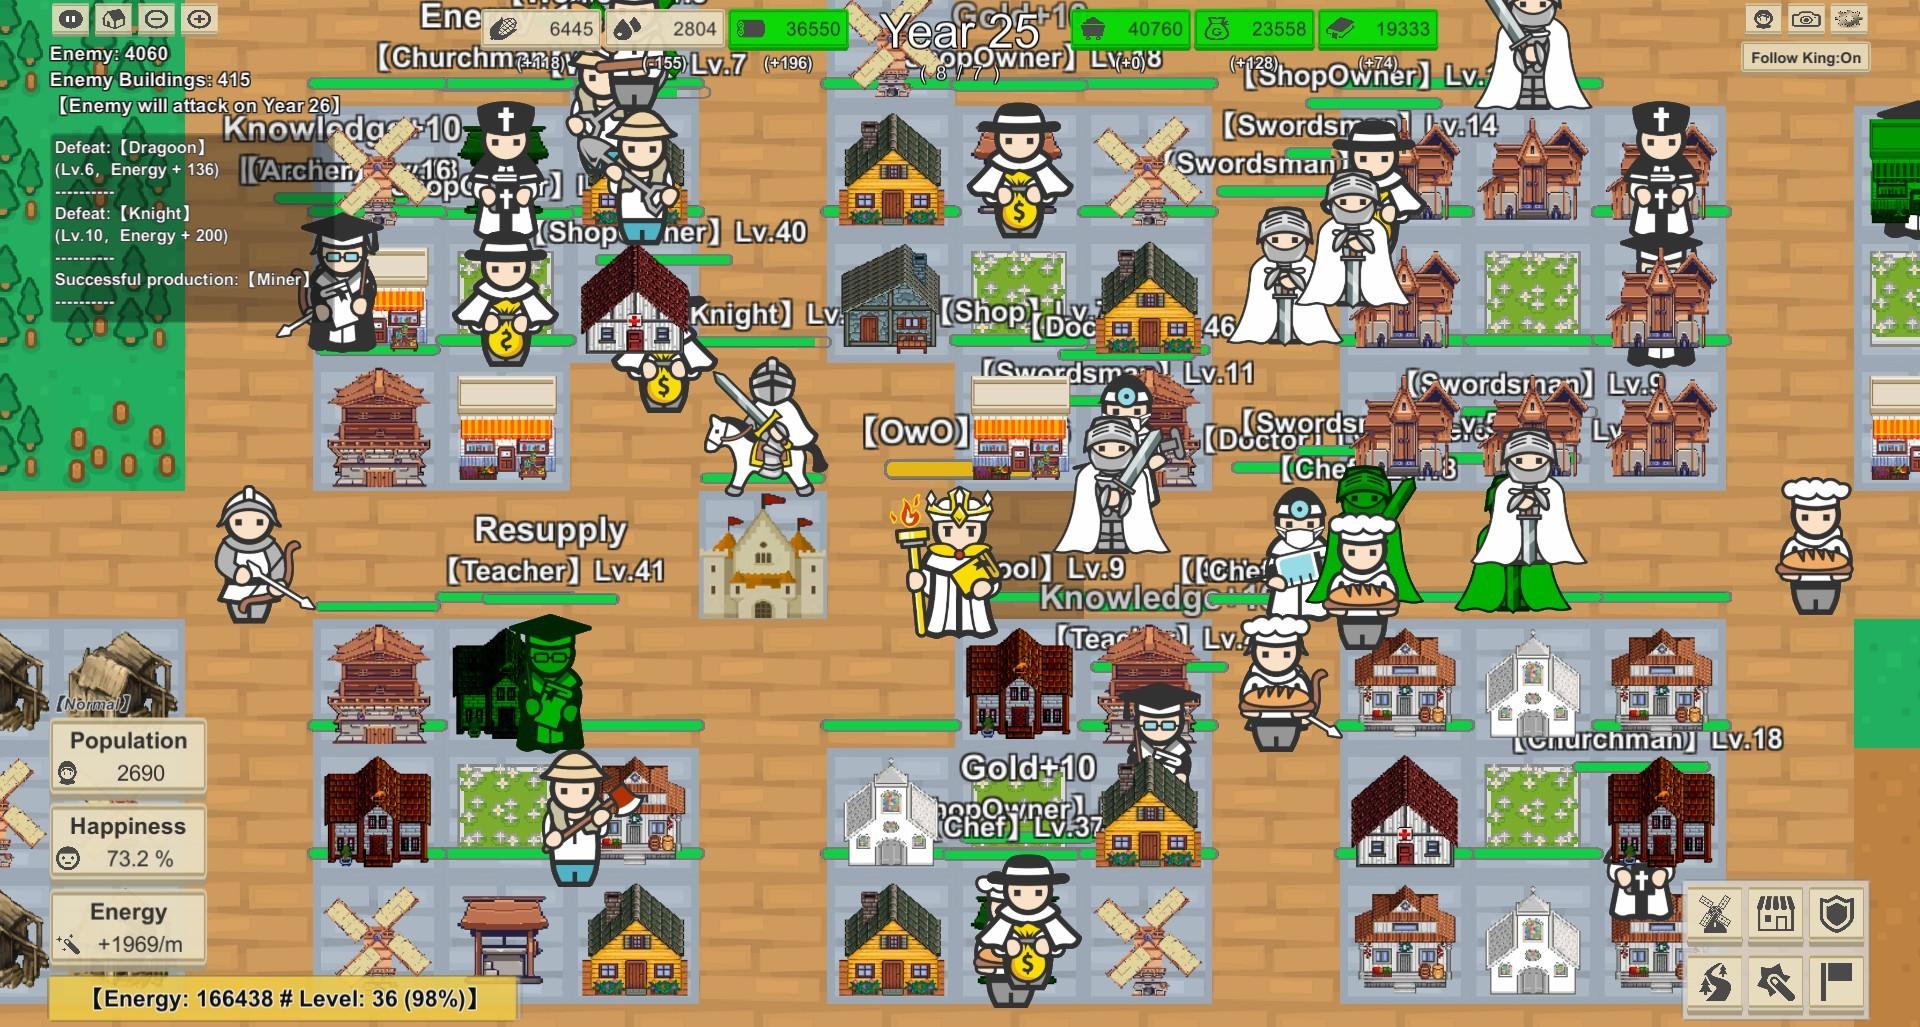 Screenshot of MiniMap Kingdom